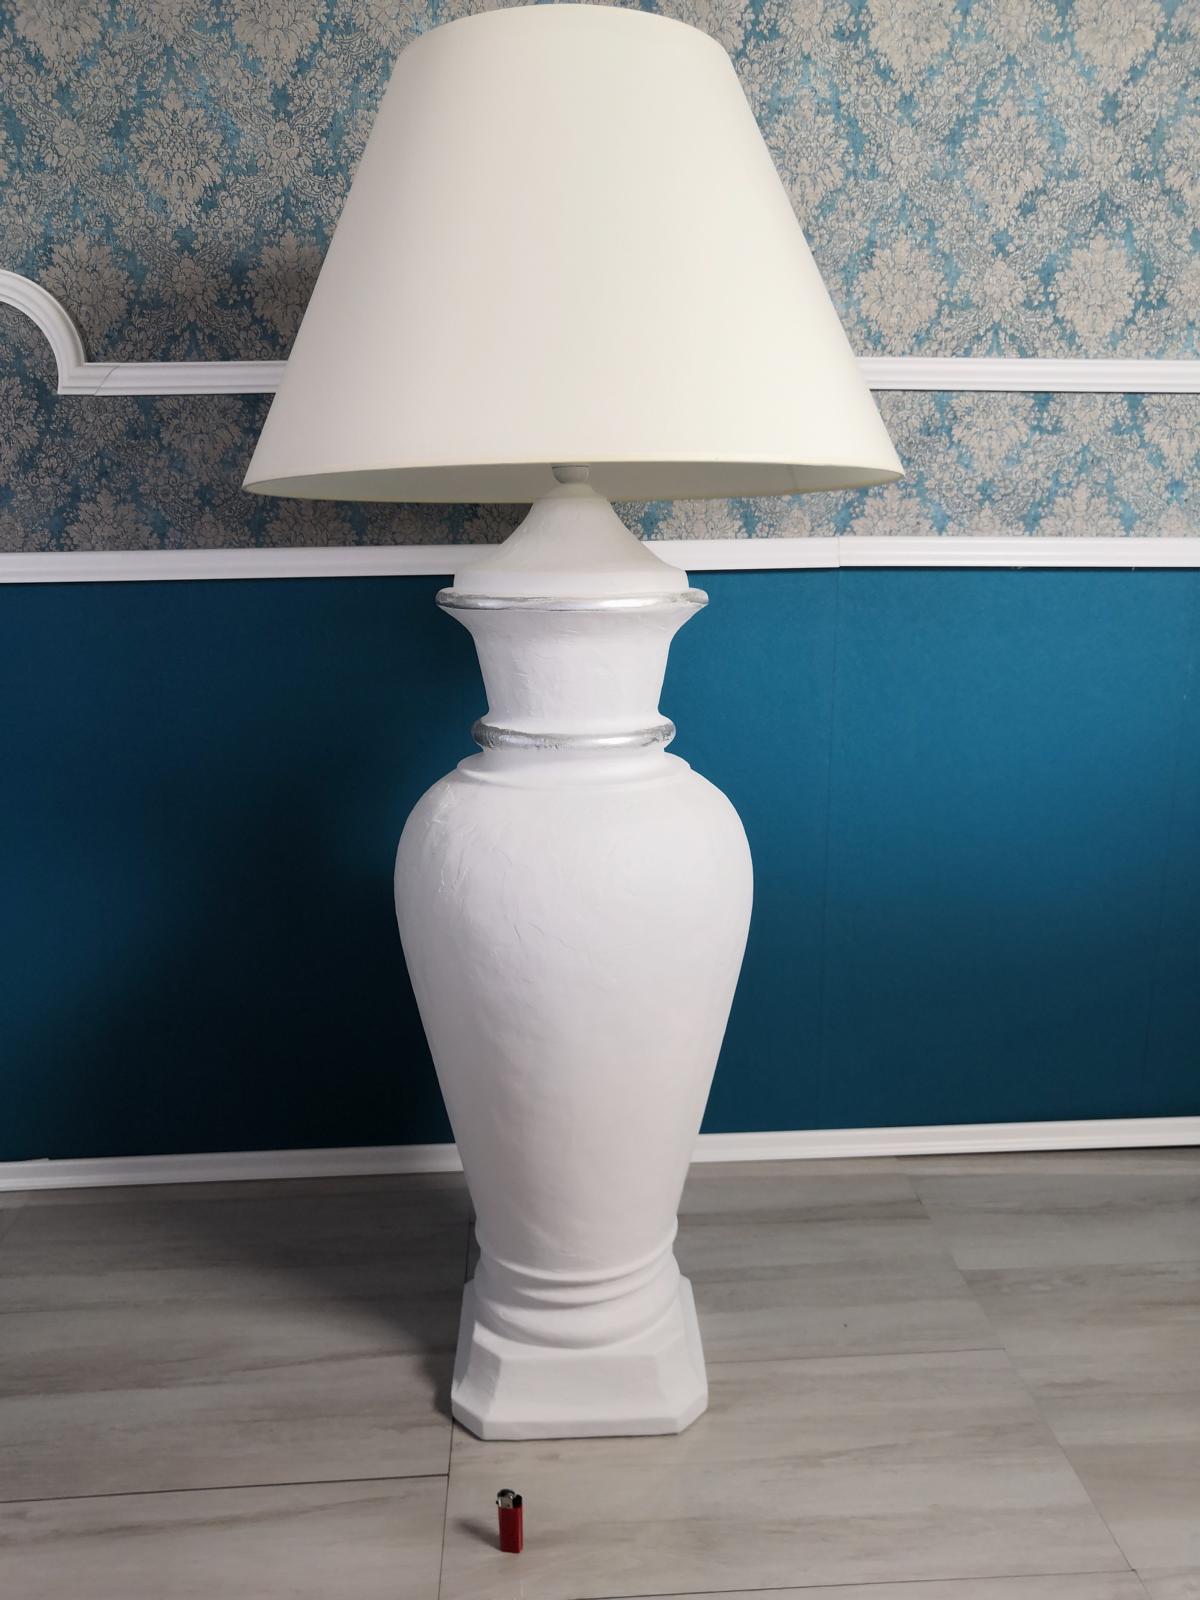 XXL Design Floor Lamp Vase Stand Lamp Lamps Illuminated Display Case 132cm Shelf